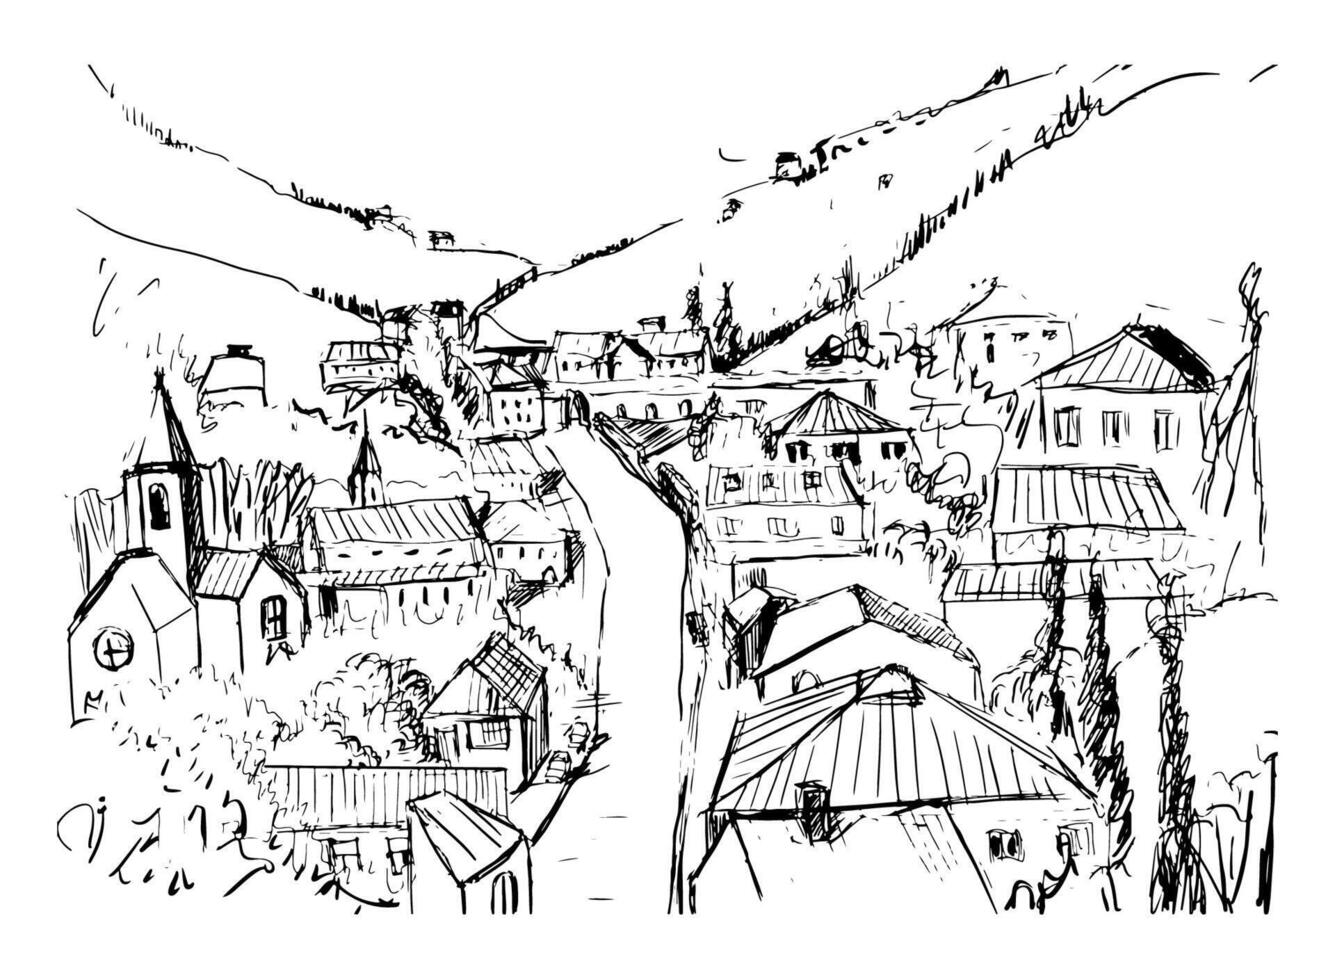 skizzieren von Berg Landschaft mit georgisch Stadt, Dorf Hand gezeichnet im schwarz und Weiß Farben. schön einfarbig Zeichnung mit Gebäude und Straßen von klein Stadt gelegen zwischen Hügel. Vektor Illustration.